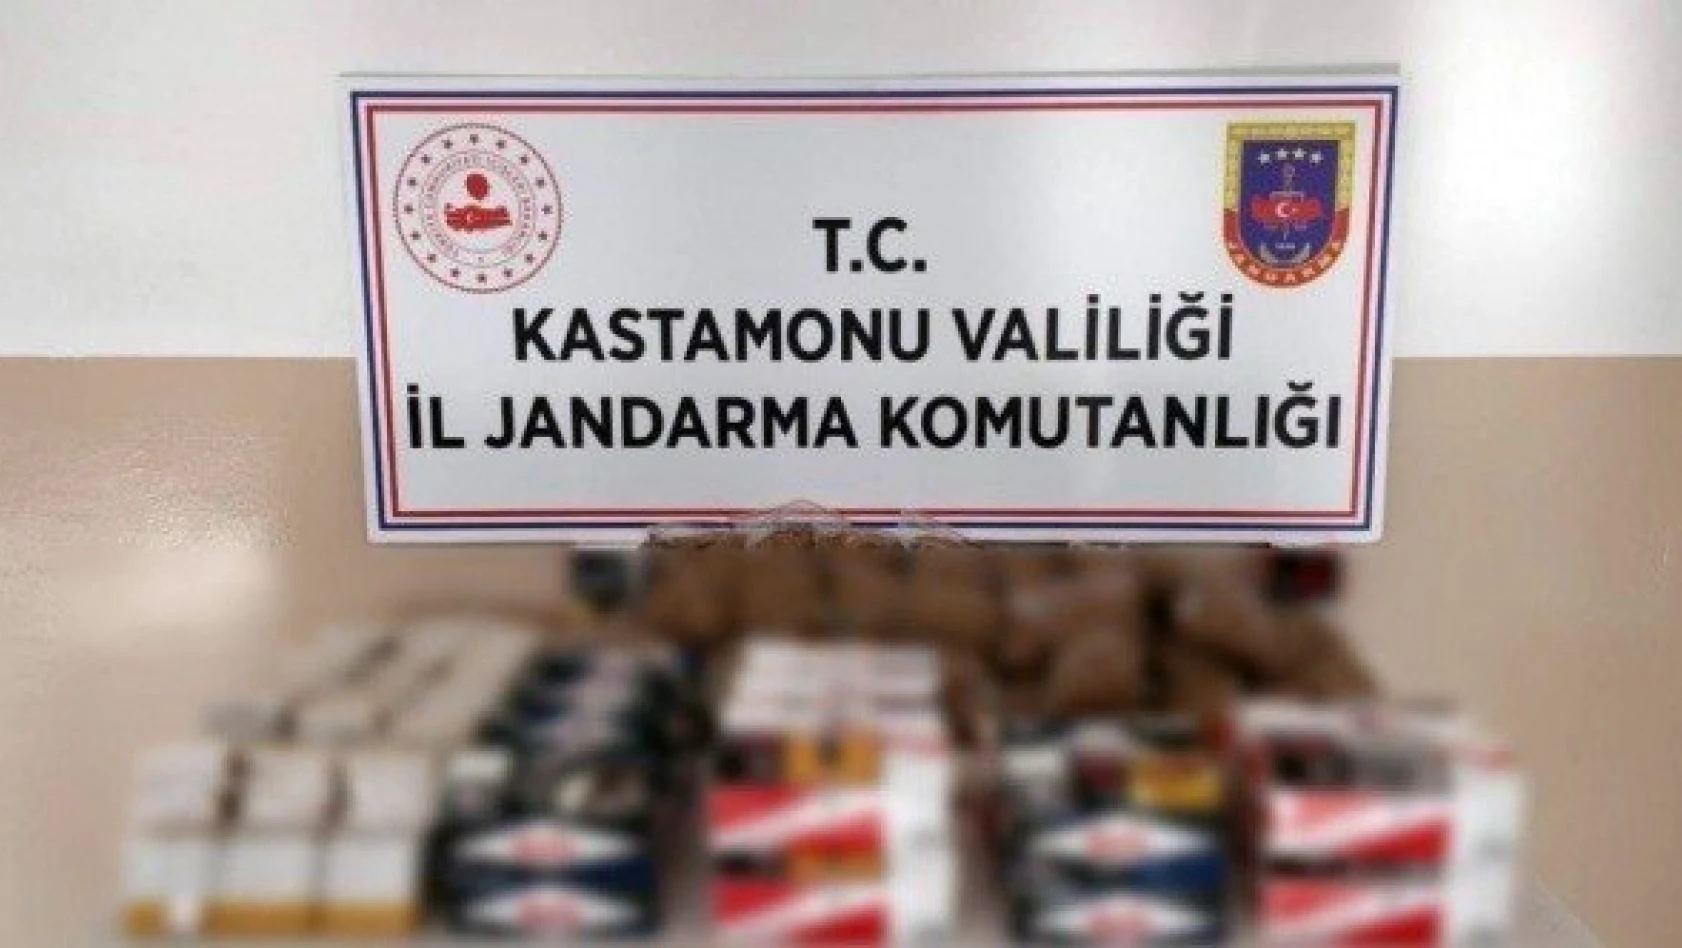 Kastamonu'da kaçak sigara operasyonu: 1 gözaltı